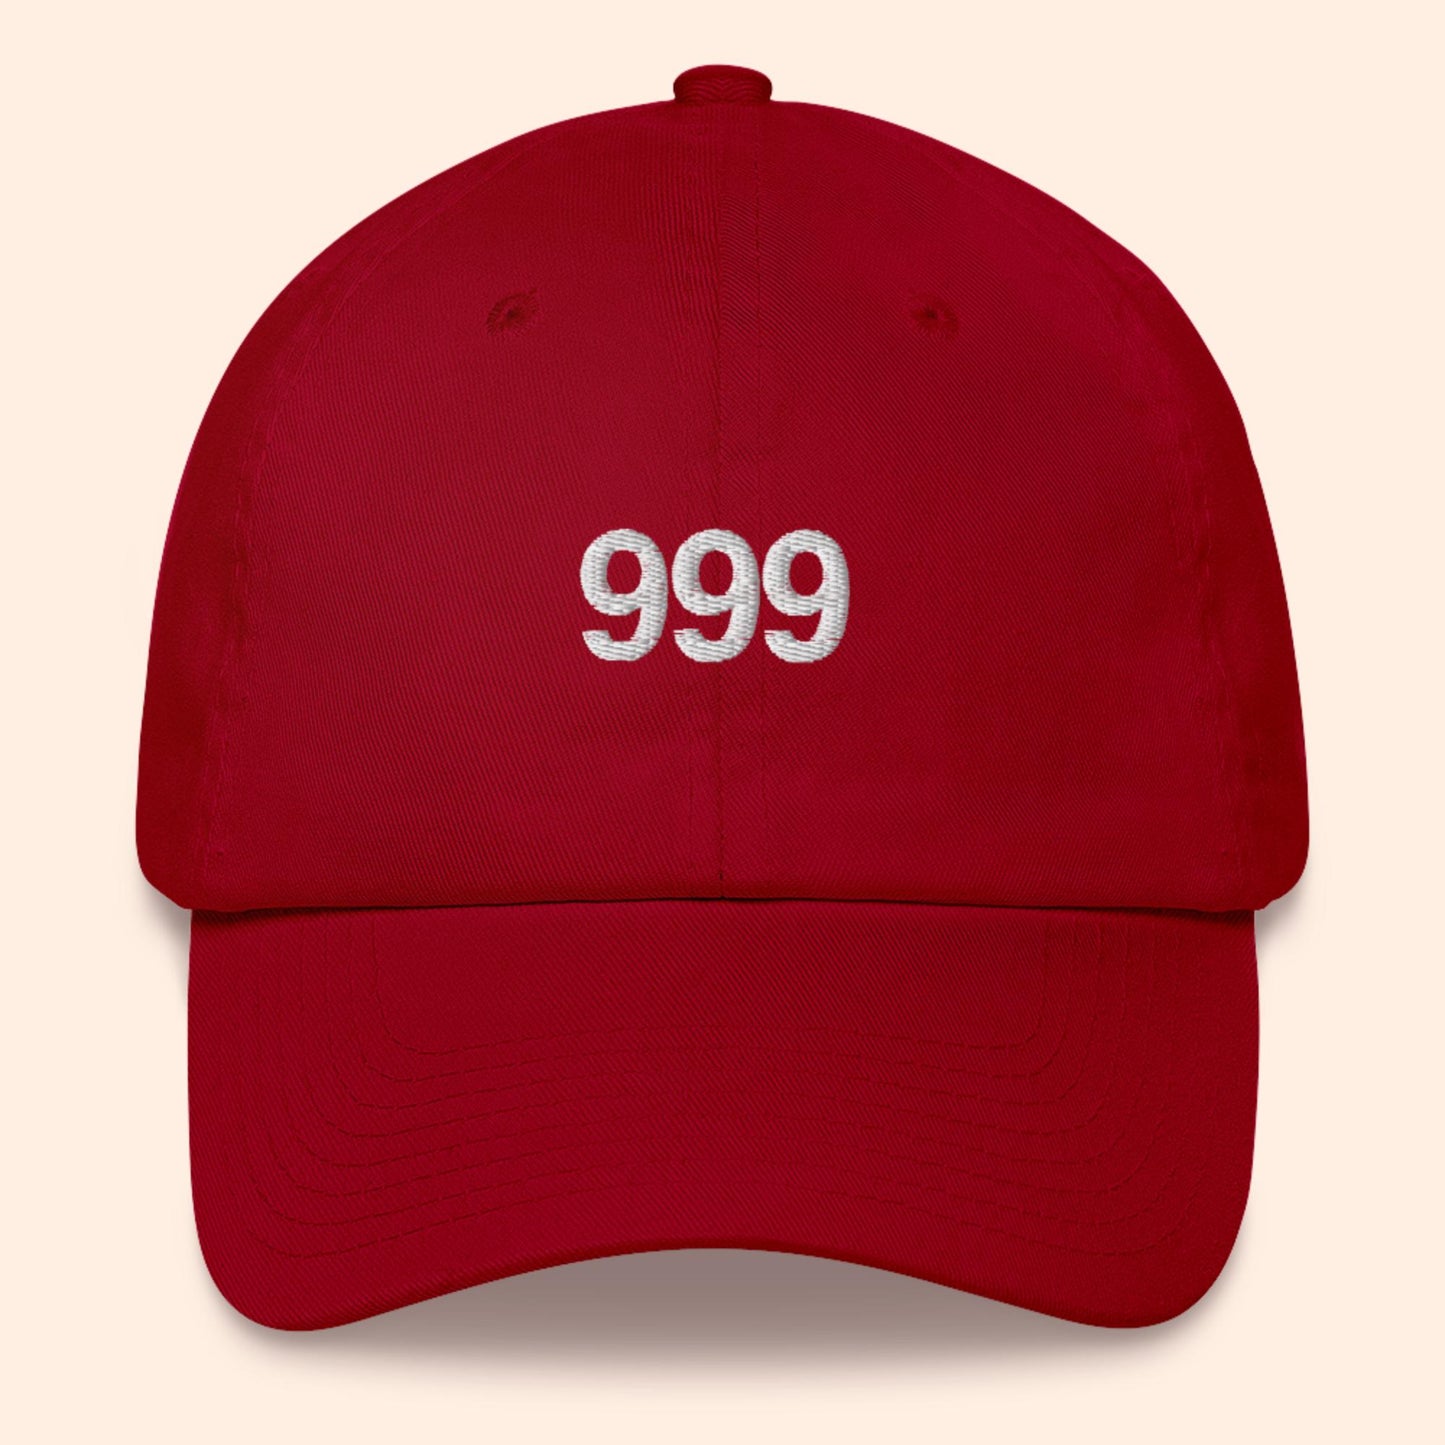 Sombrero del número de ángel 999